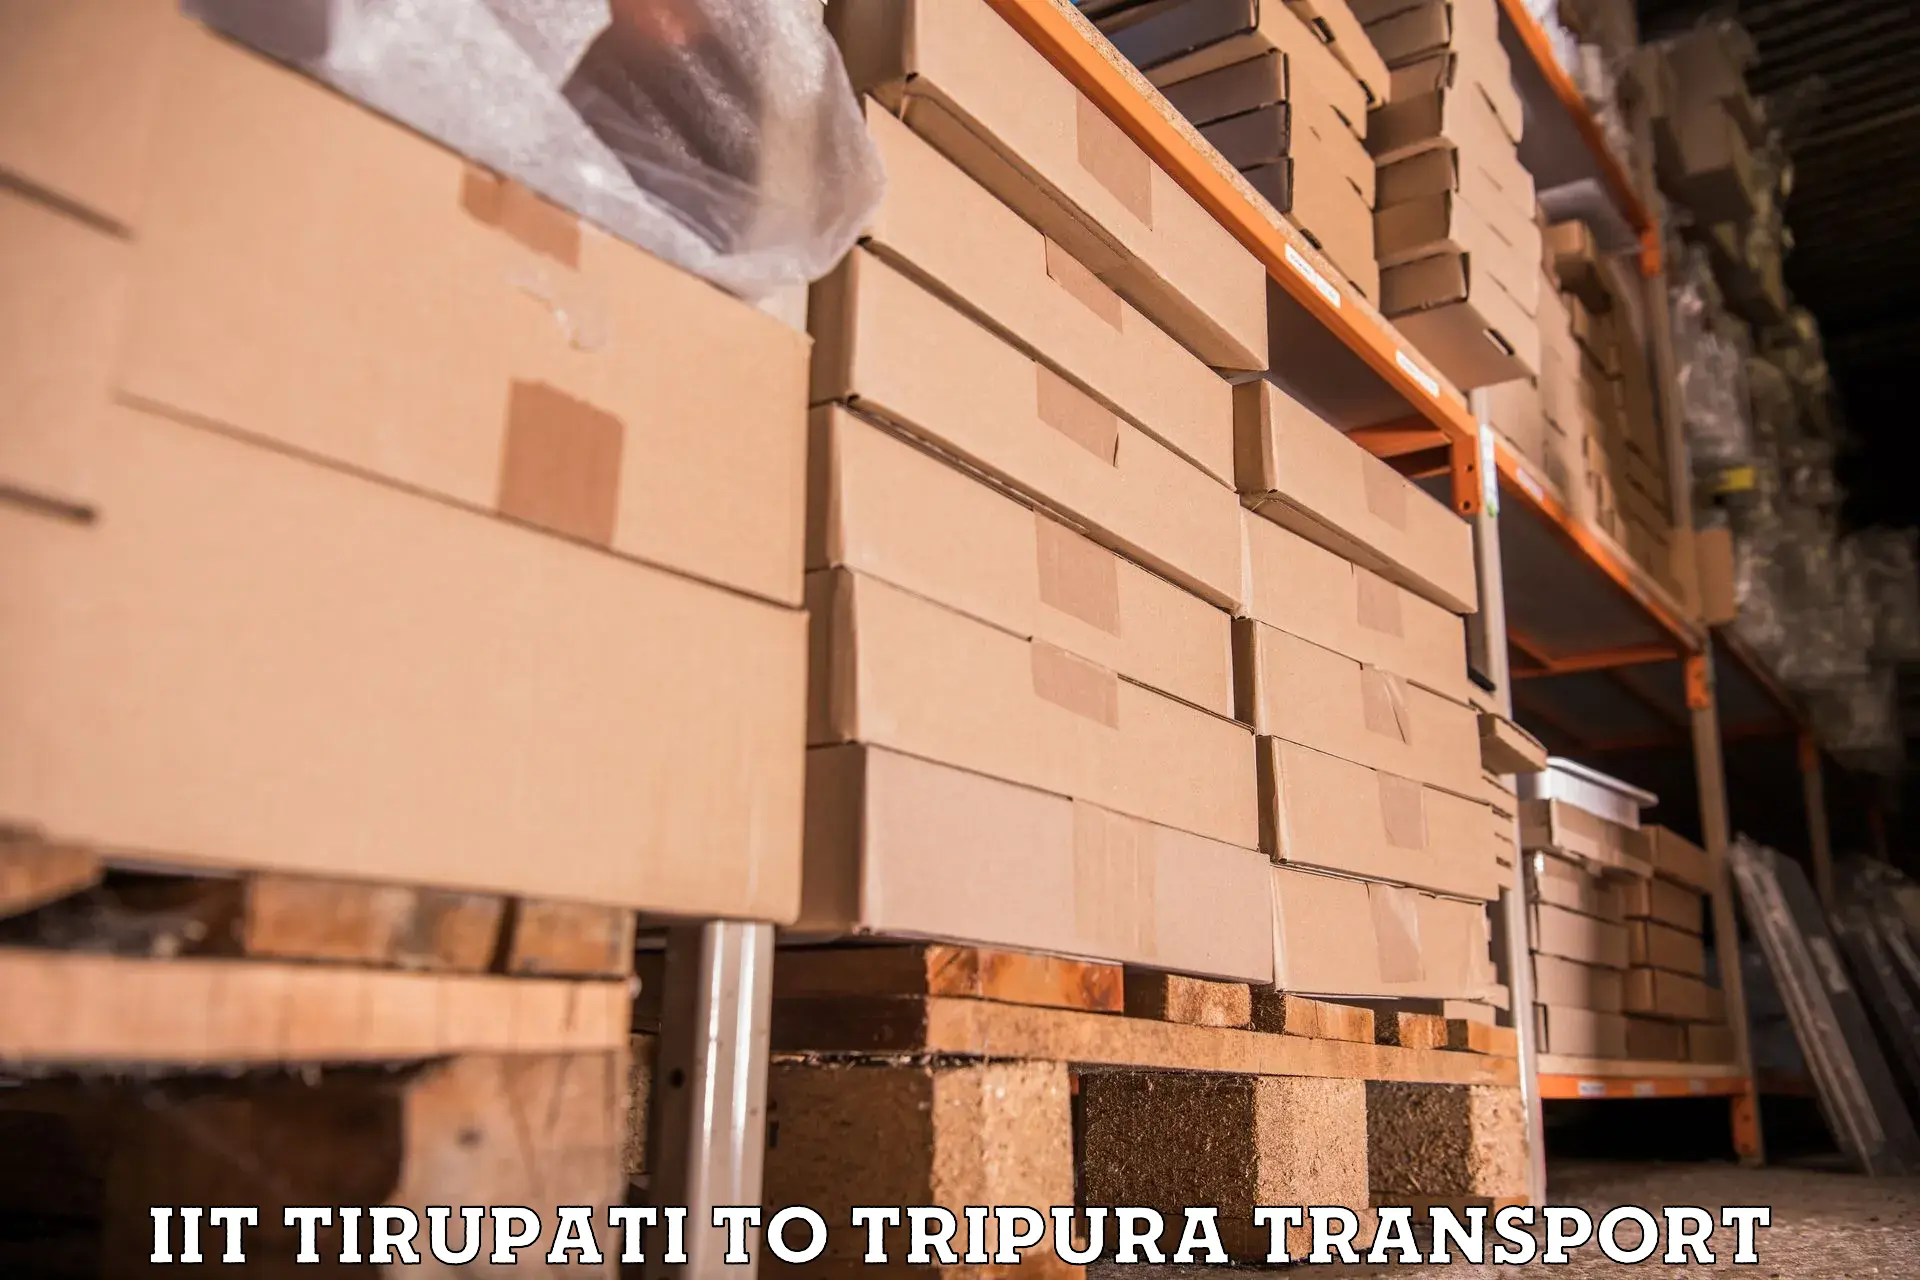 Nearest transport service in IIT Tirupati to Kamalpur